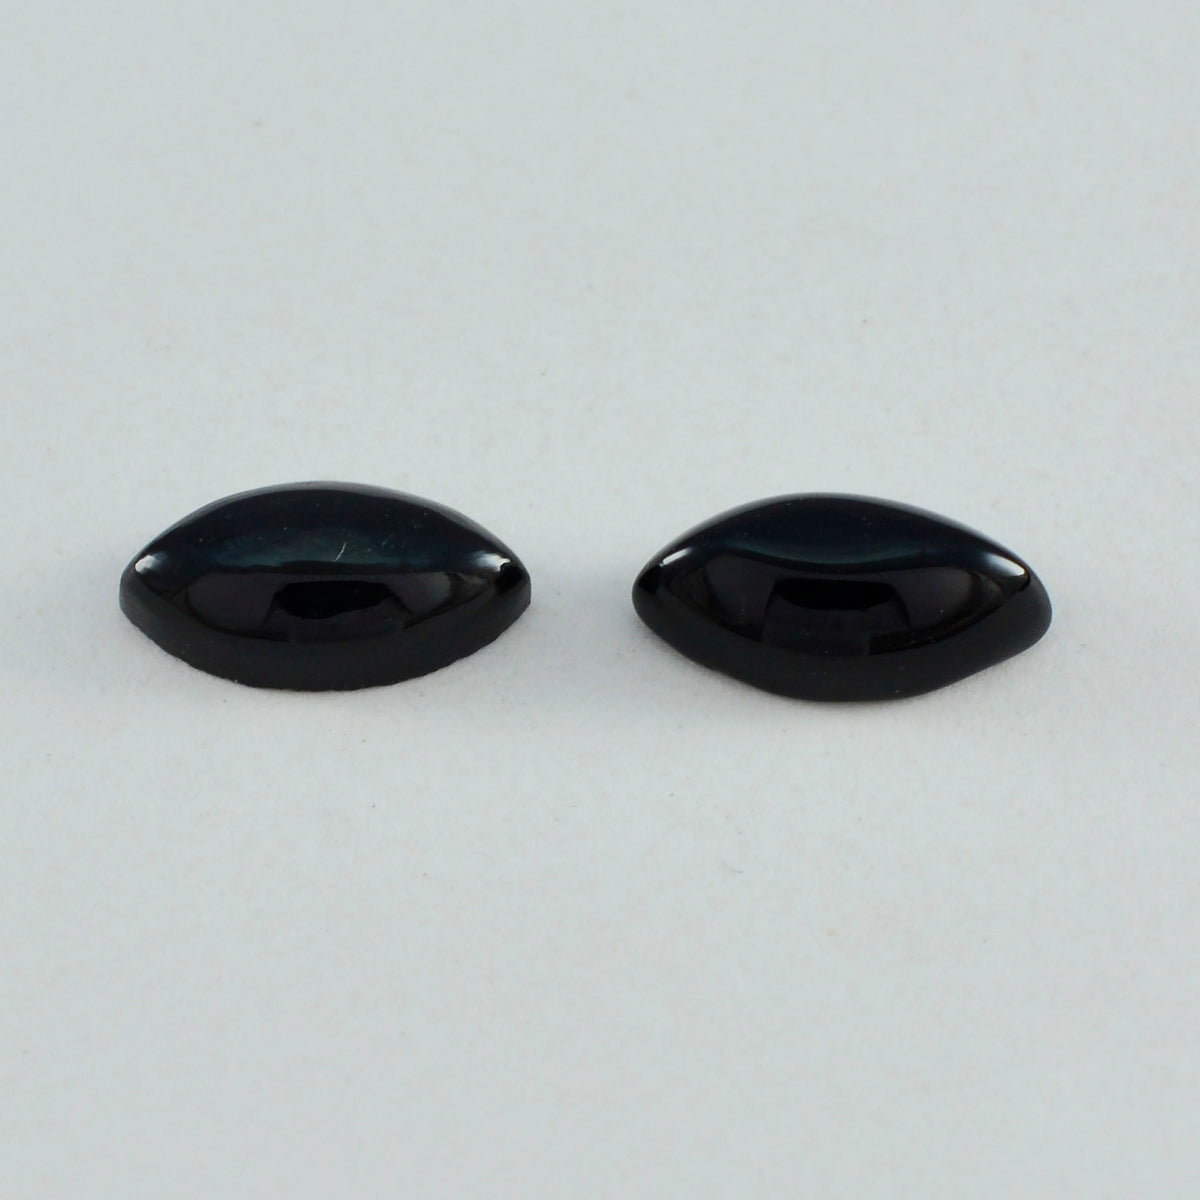 Riyogems, 1 pieza, cabujón de ónix negro, 8x16mm, forma de marquesa, gema suelta de buena calidad